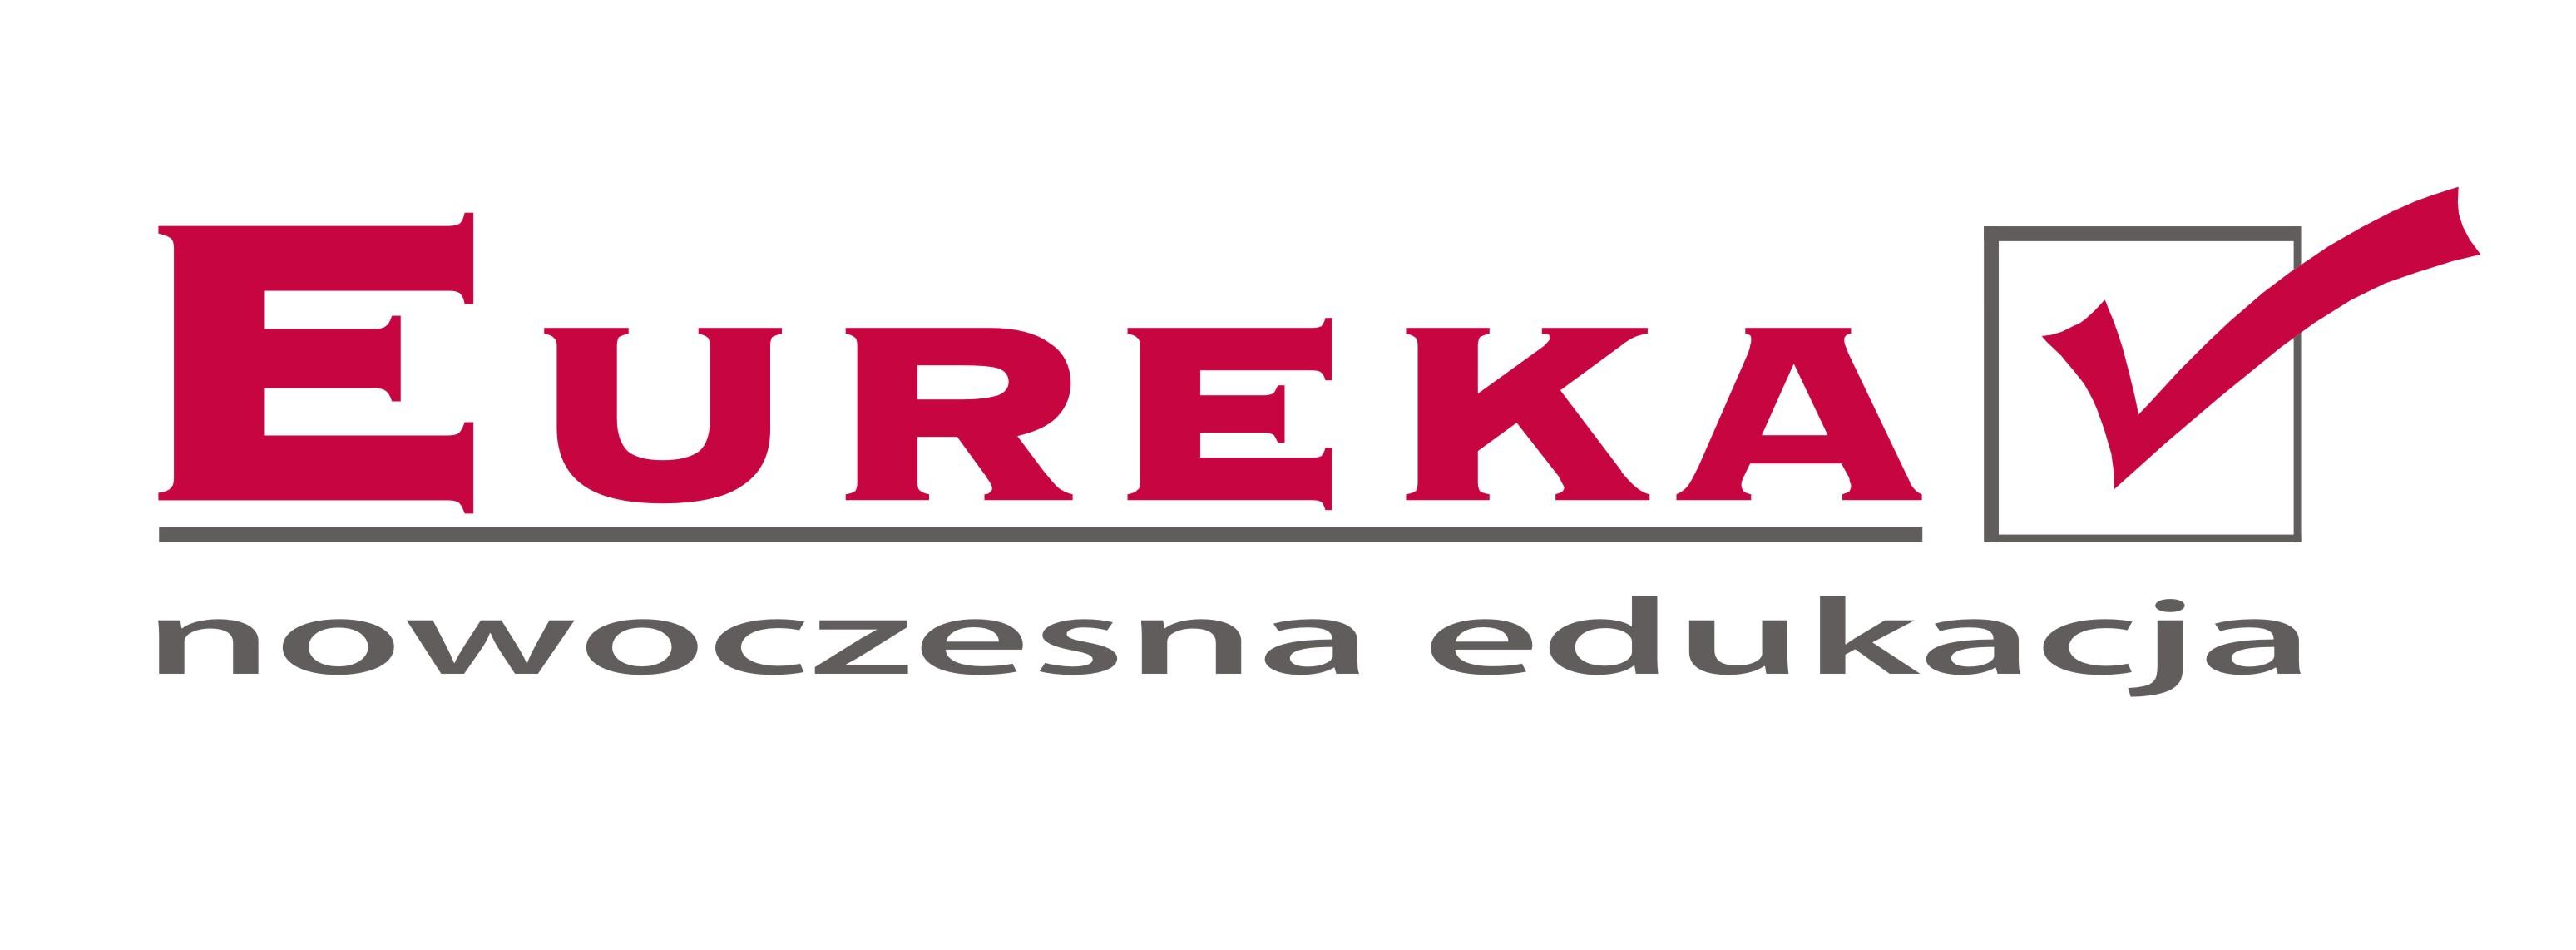 Eureka - szkoły policealne, licea, kursy, Rzeszów, podkarpackie